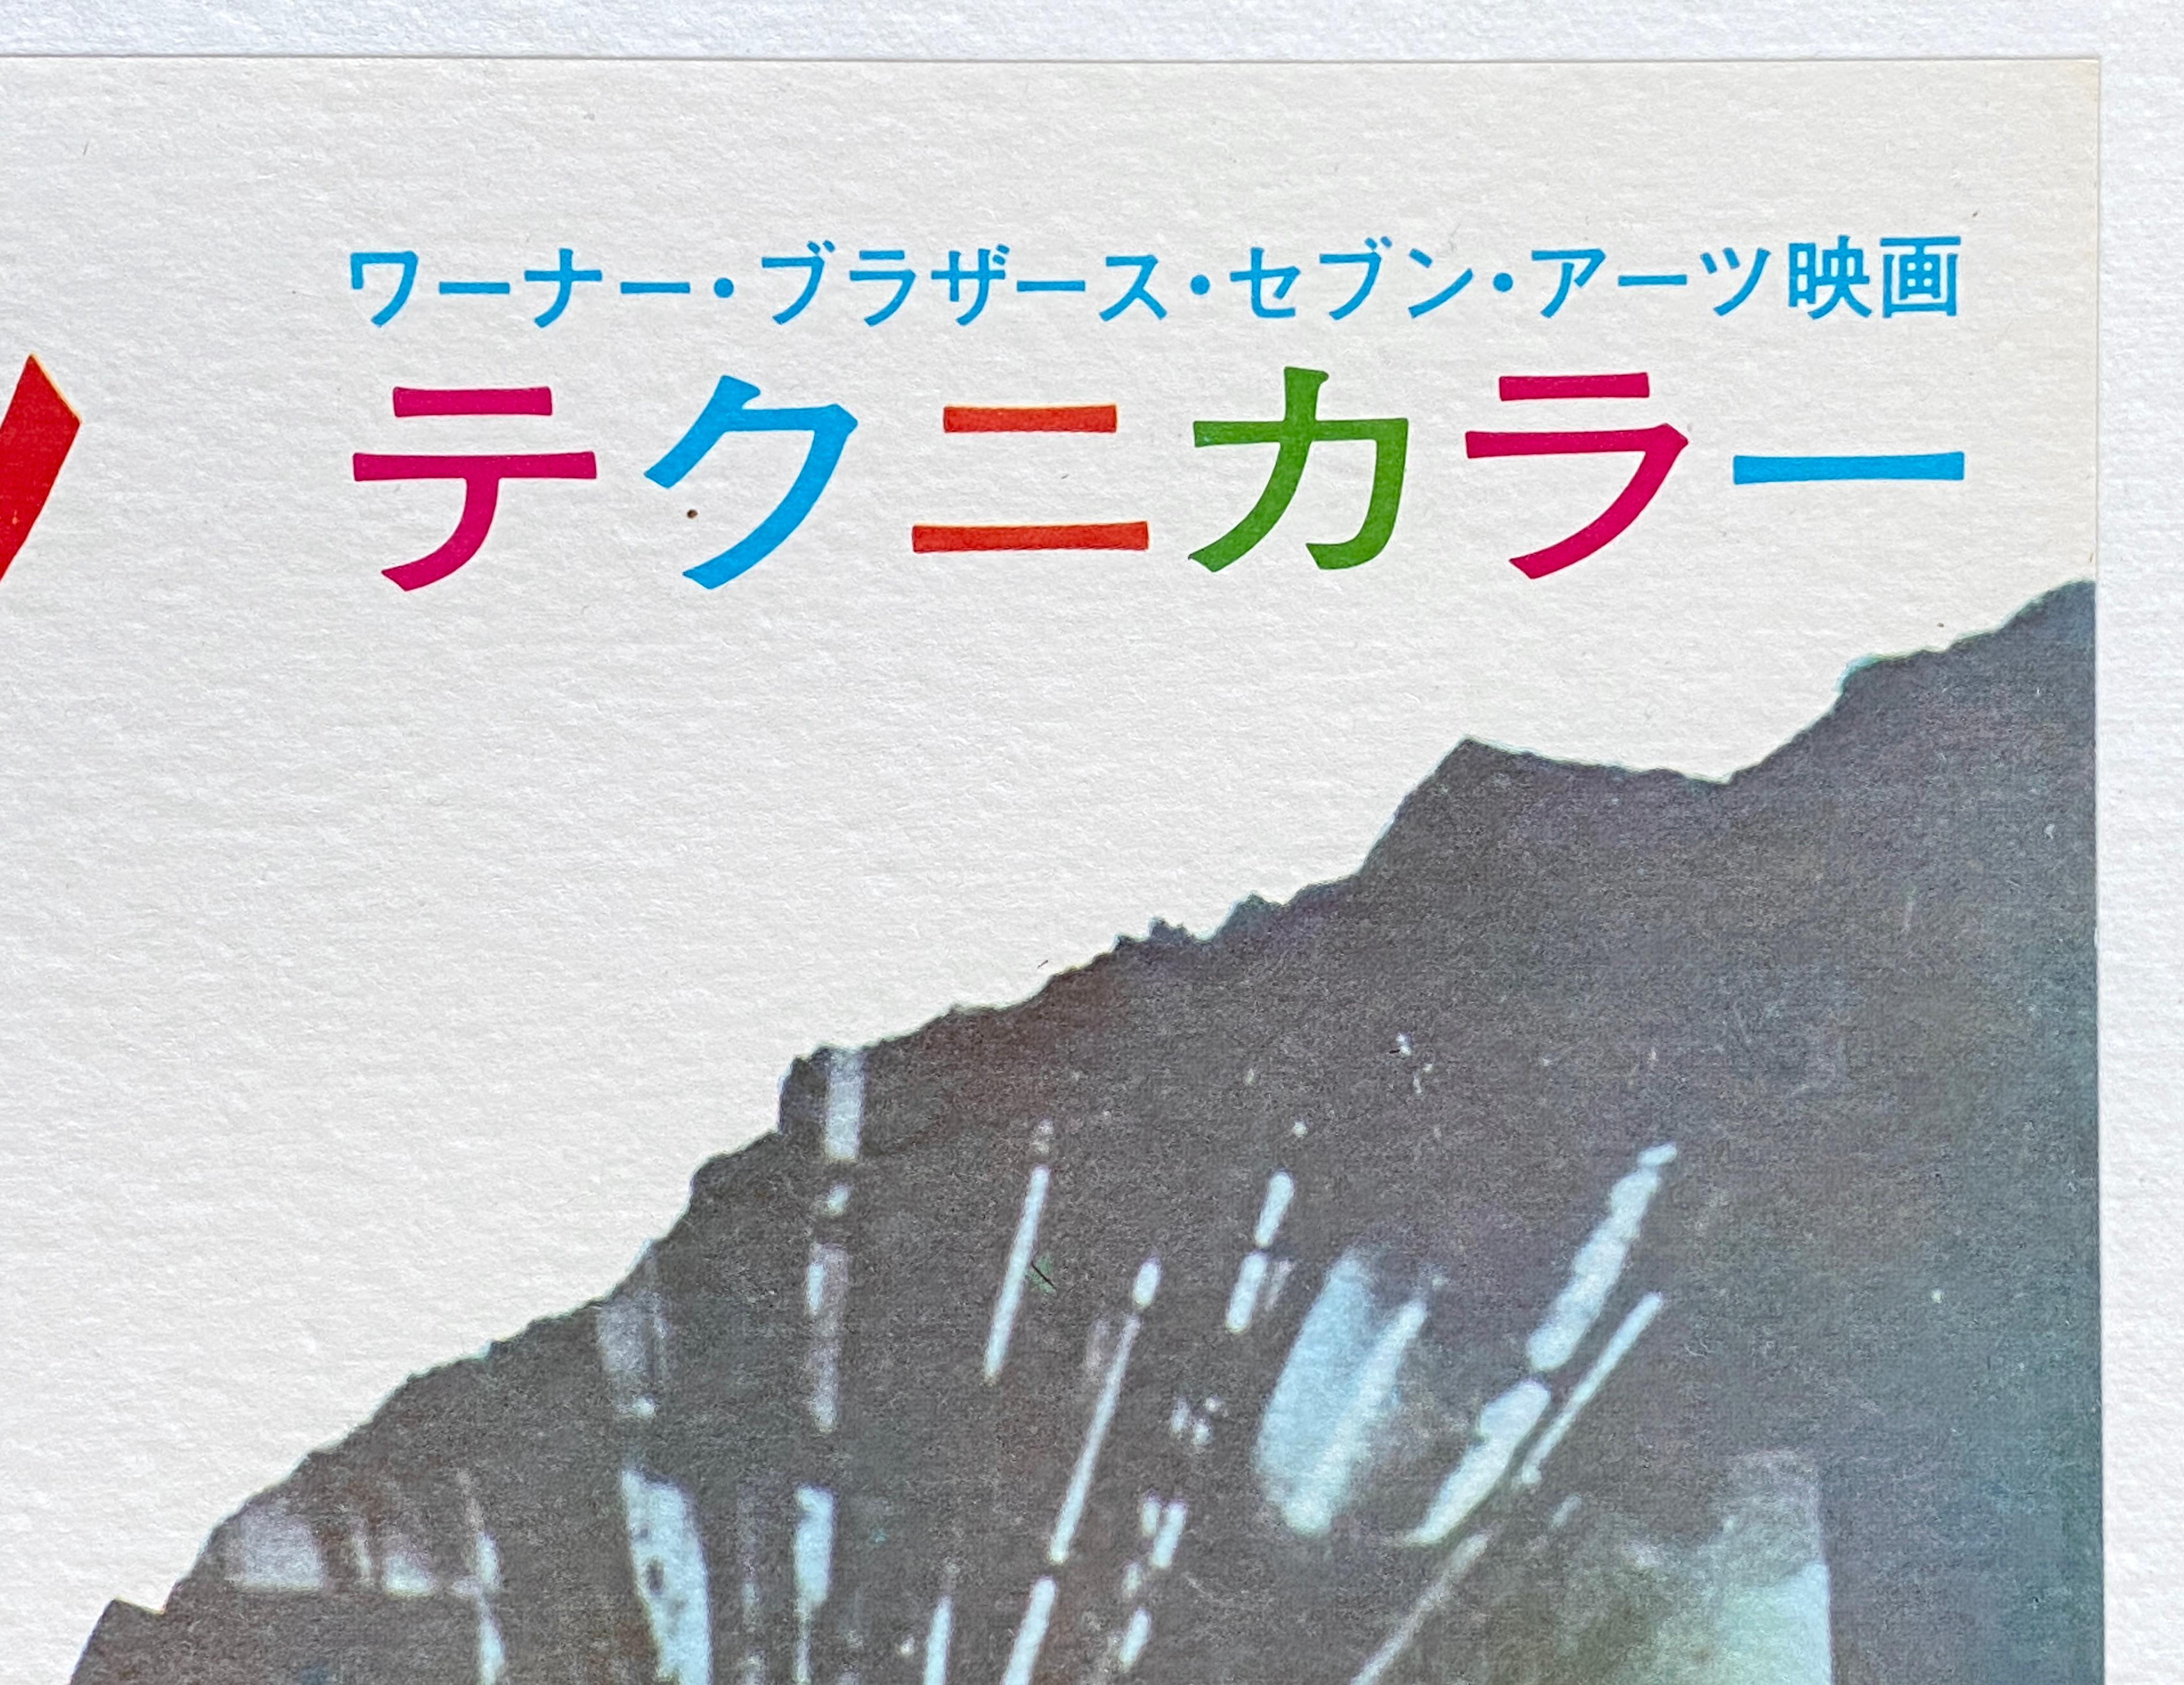 Post-Modern Steve McQueen 'Bullitt' Original Vintage Movie Poster, Japanese, 1968